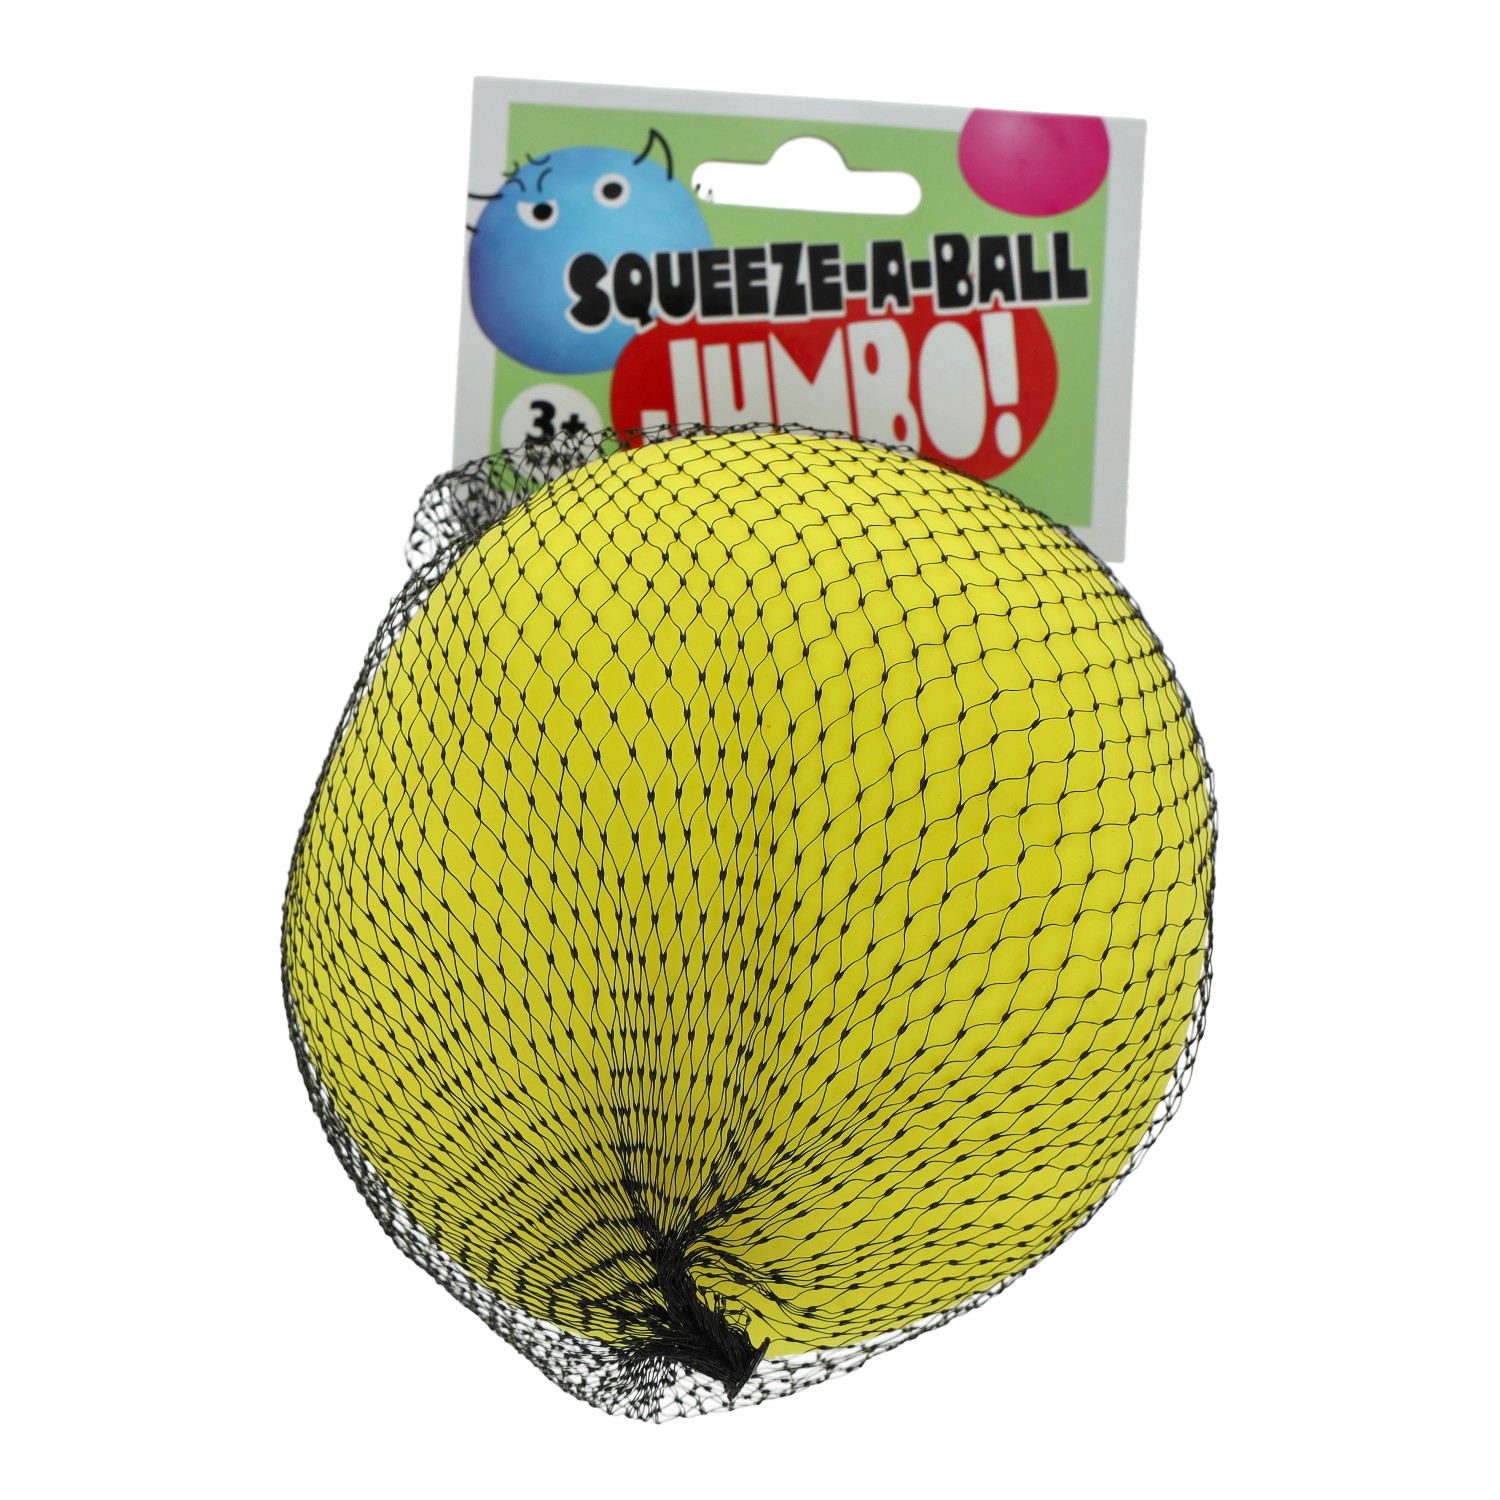 Squeez-A-Ball groß